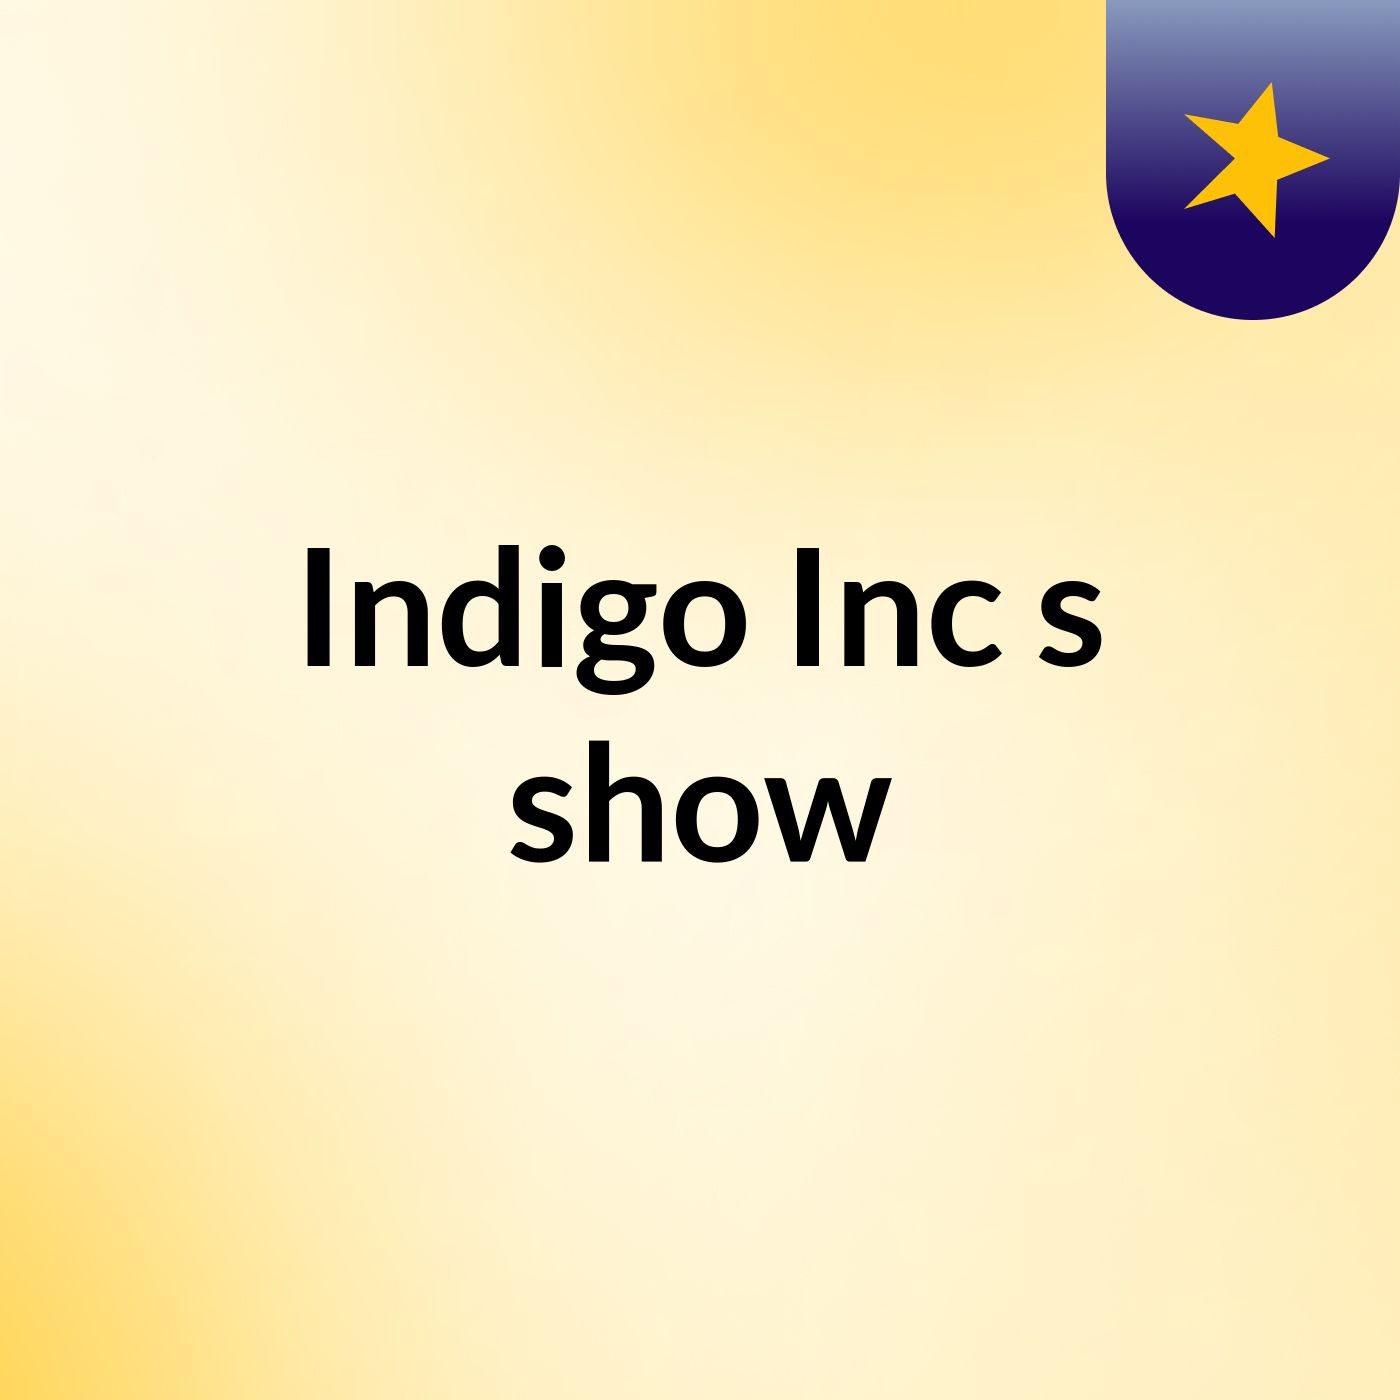 Indigo Inc's show